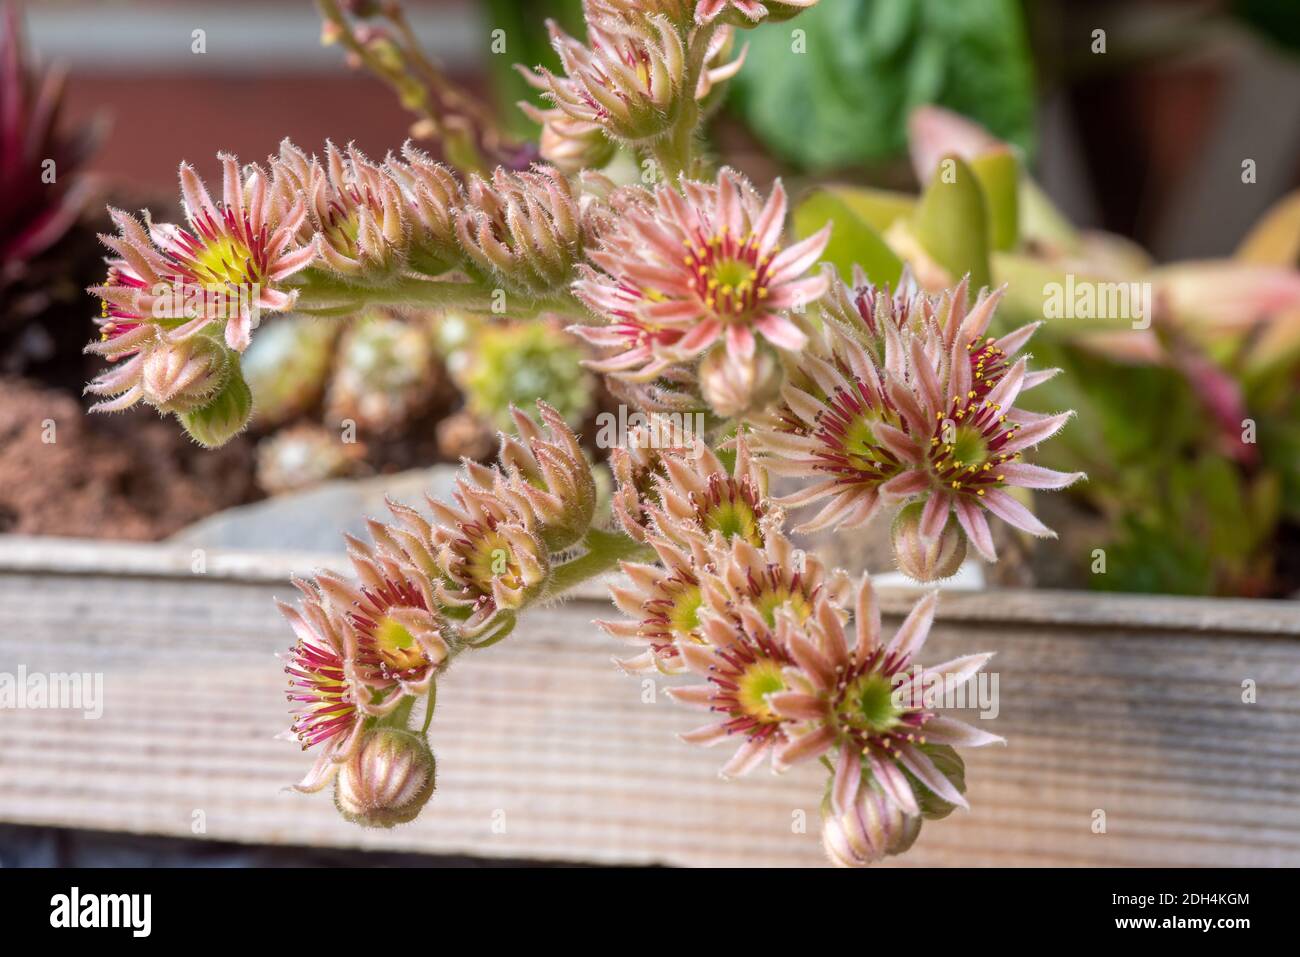 Flower rosettes Stock Photo